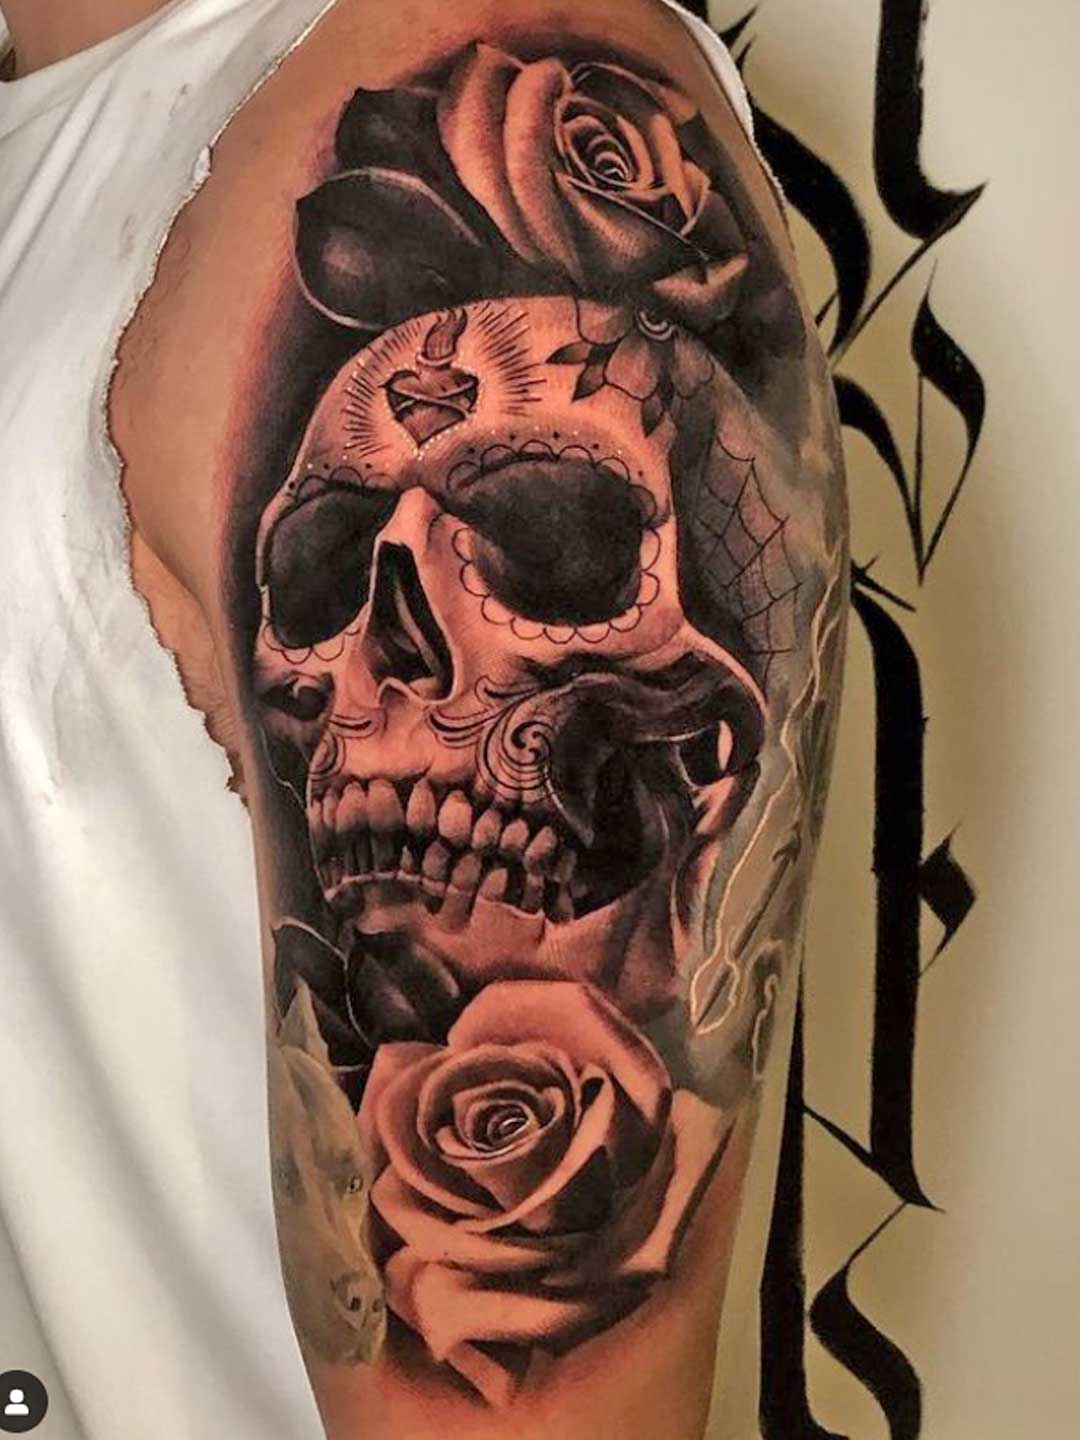 Maui tattoo artist Dre6